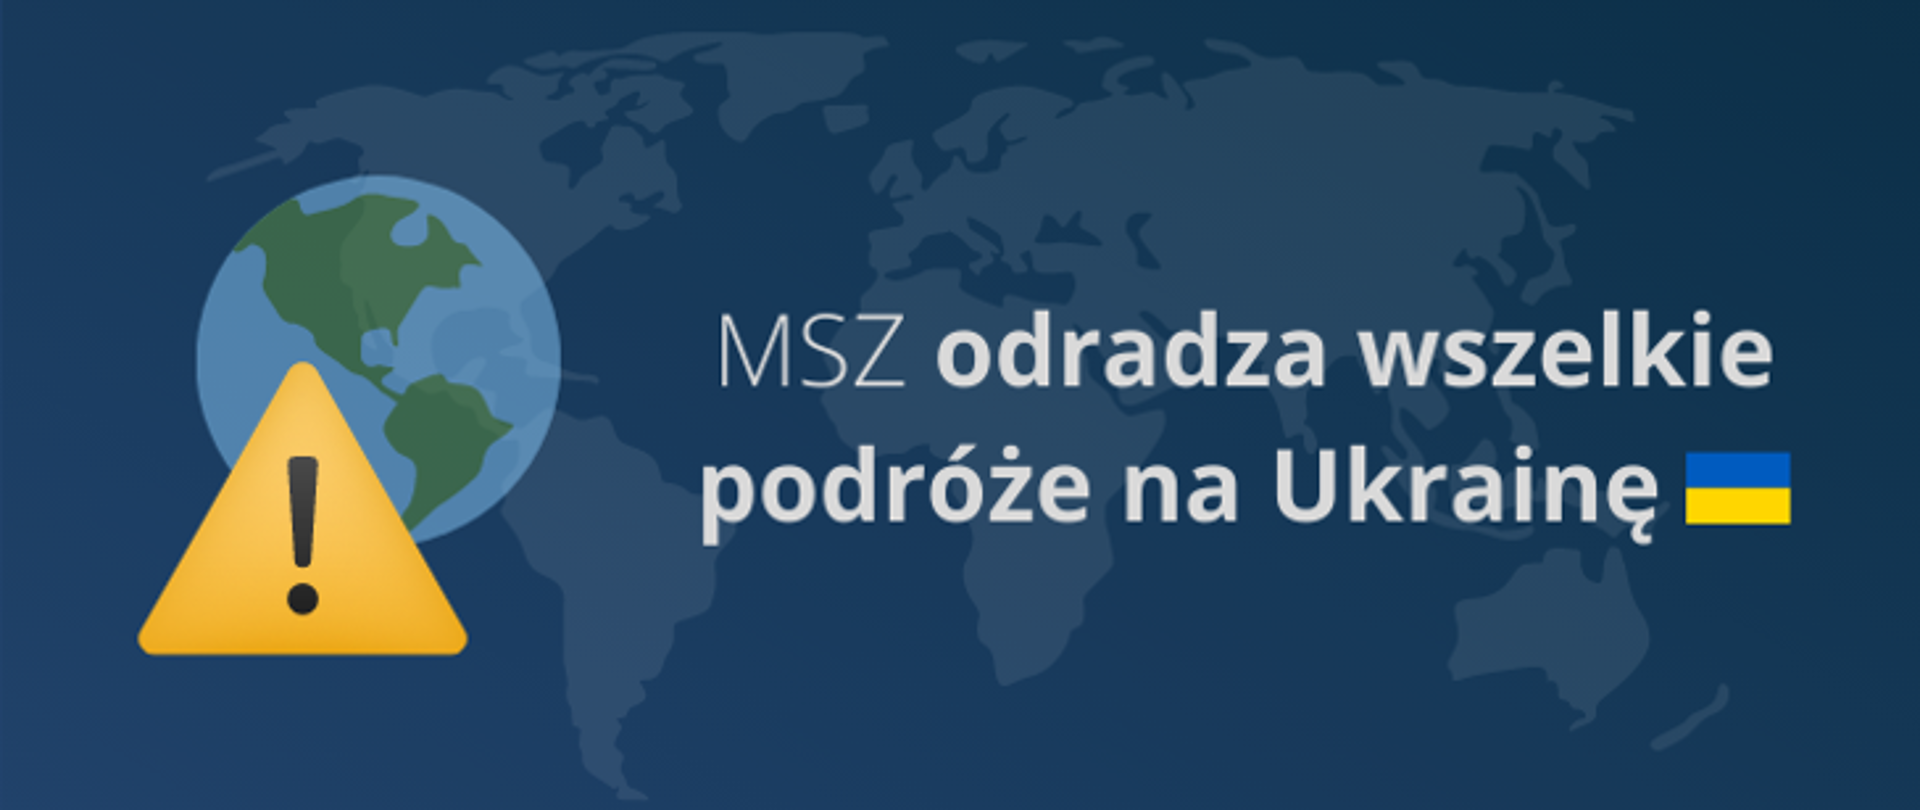 MSZ odradza wszelkie podróże na Ukrainę